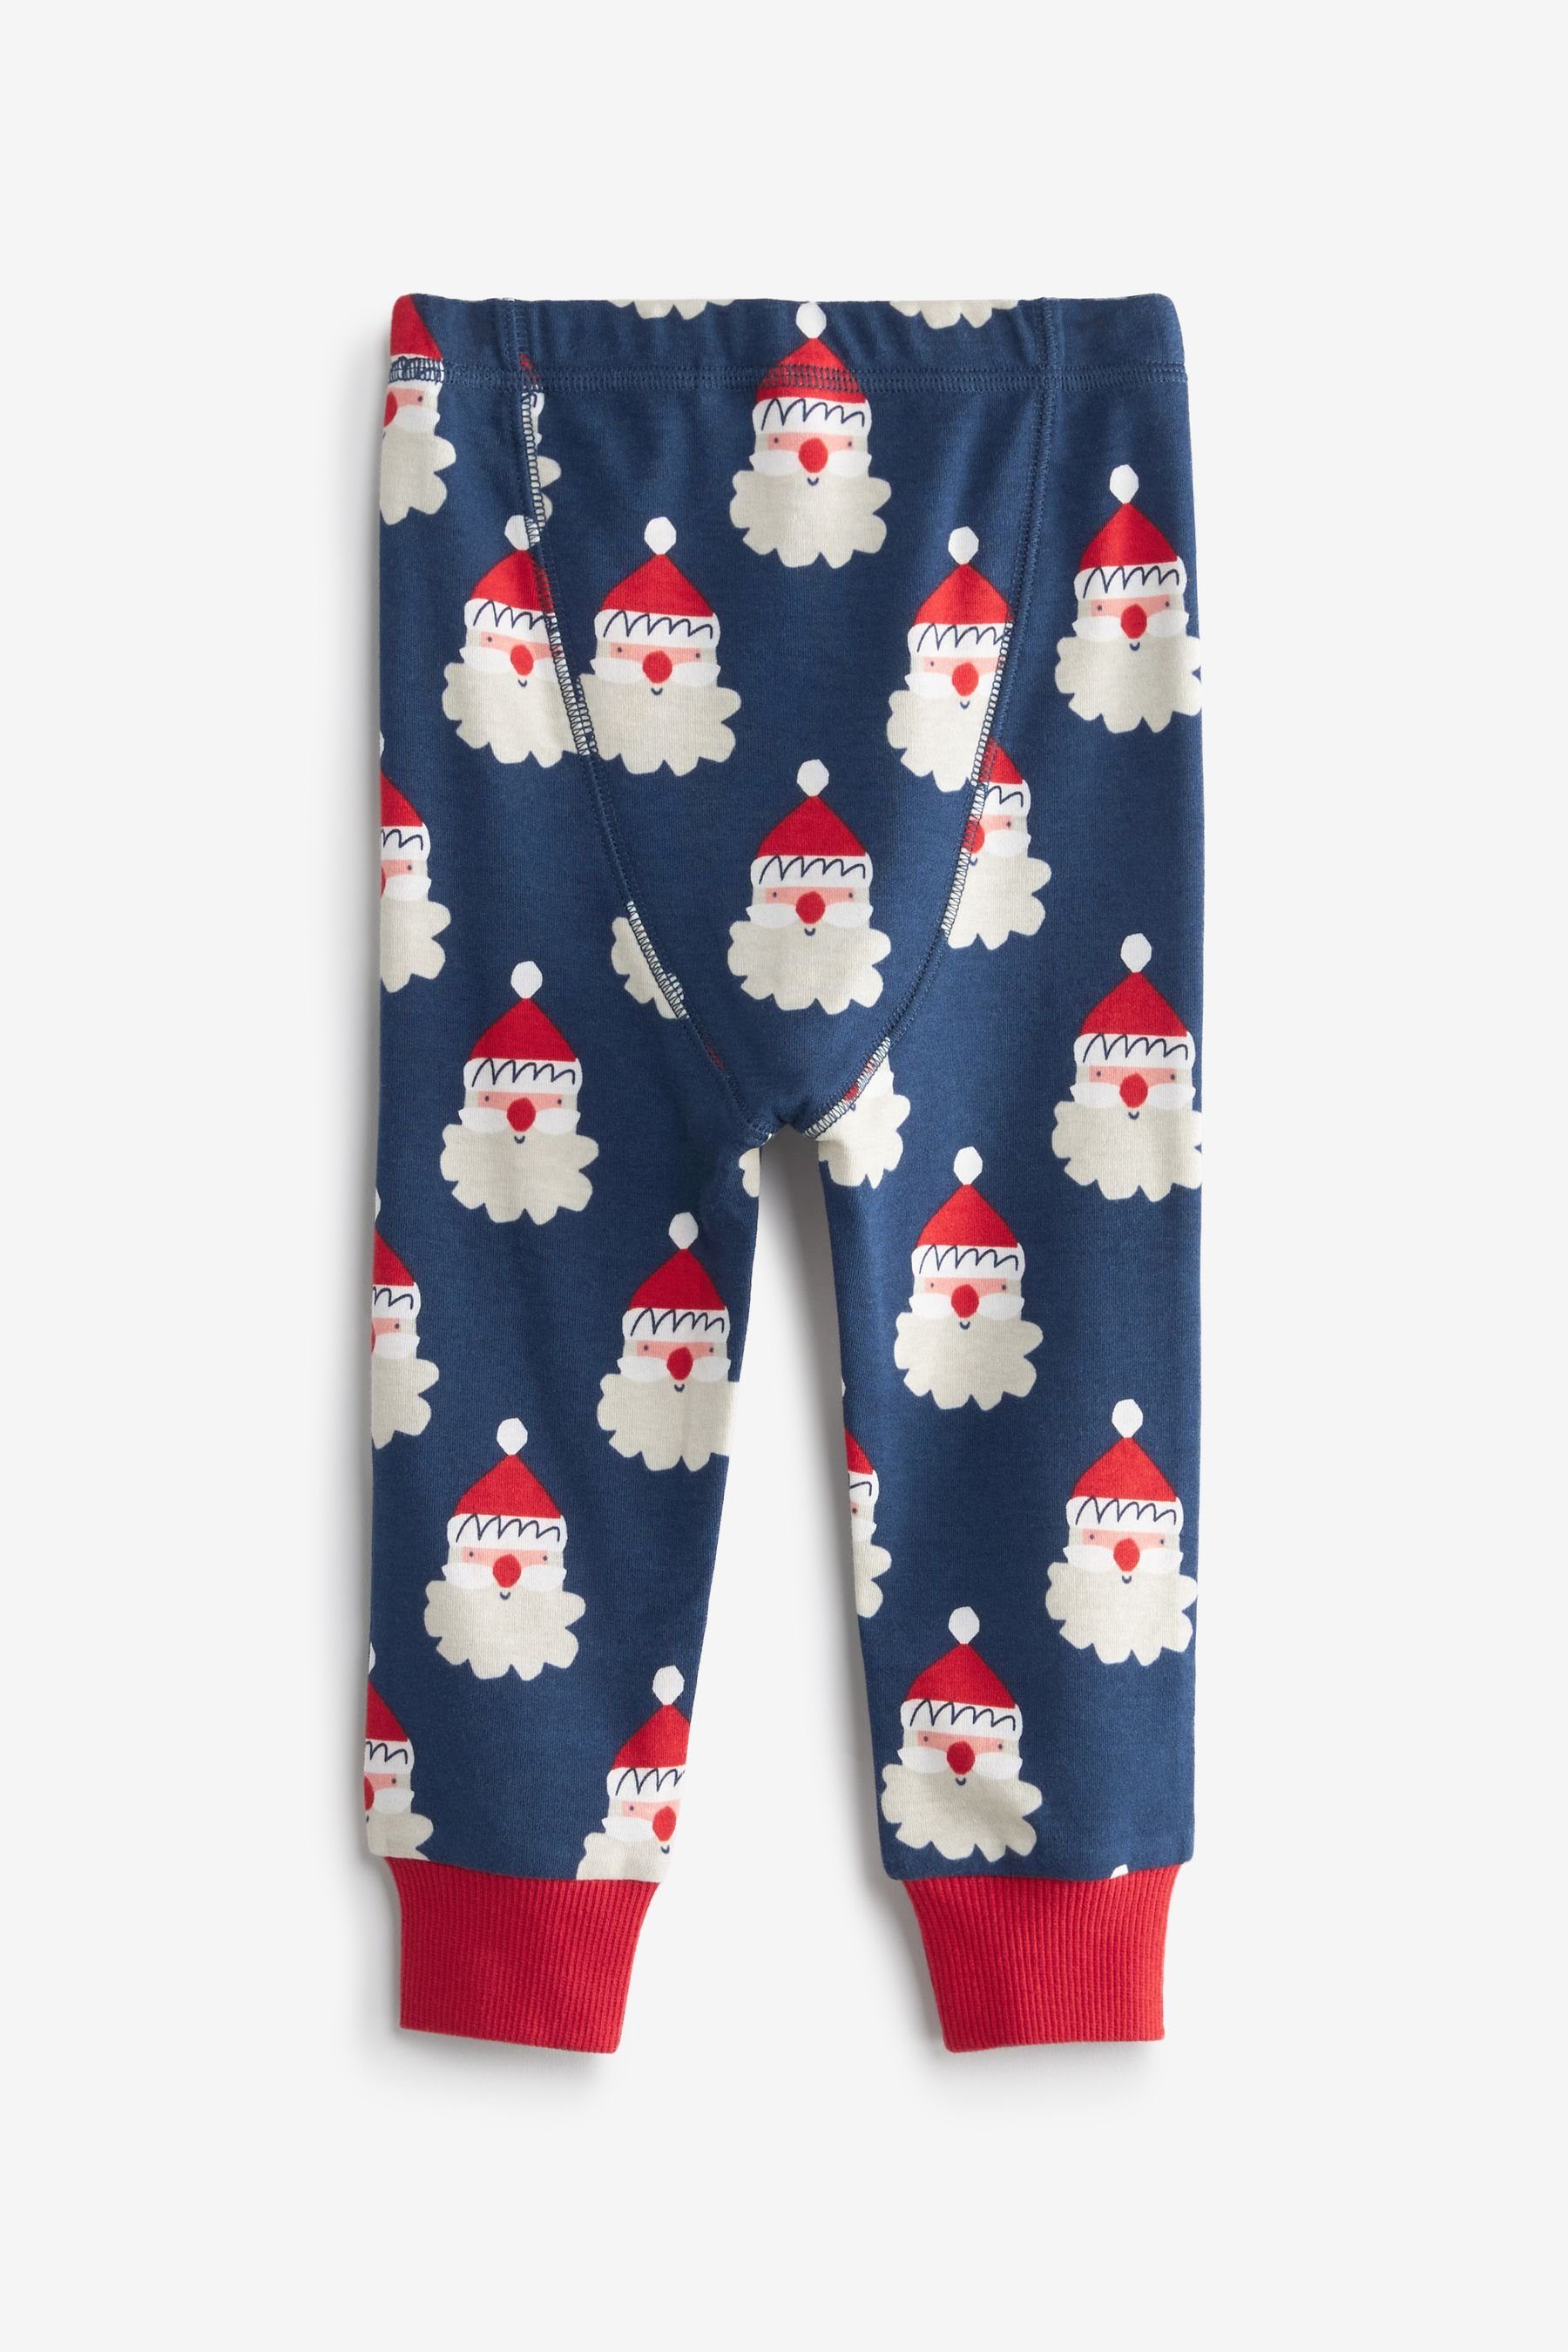 Next Schlafanzug Weihnachtlicher Pyjama (2 Navy Blue tlg) Santa